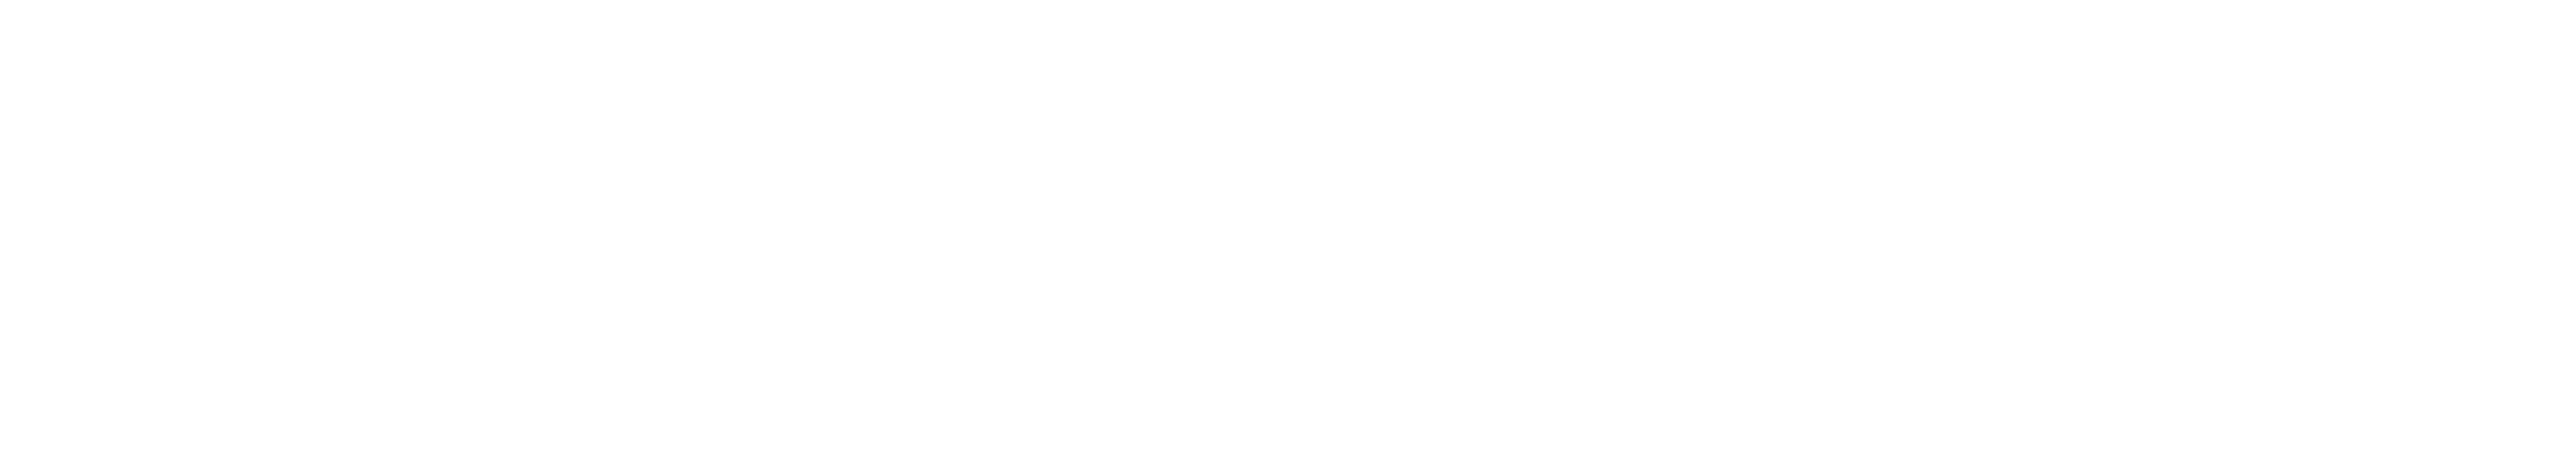 Caffe Culture Show 2023 Logo